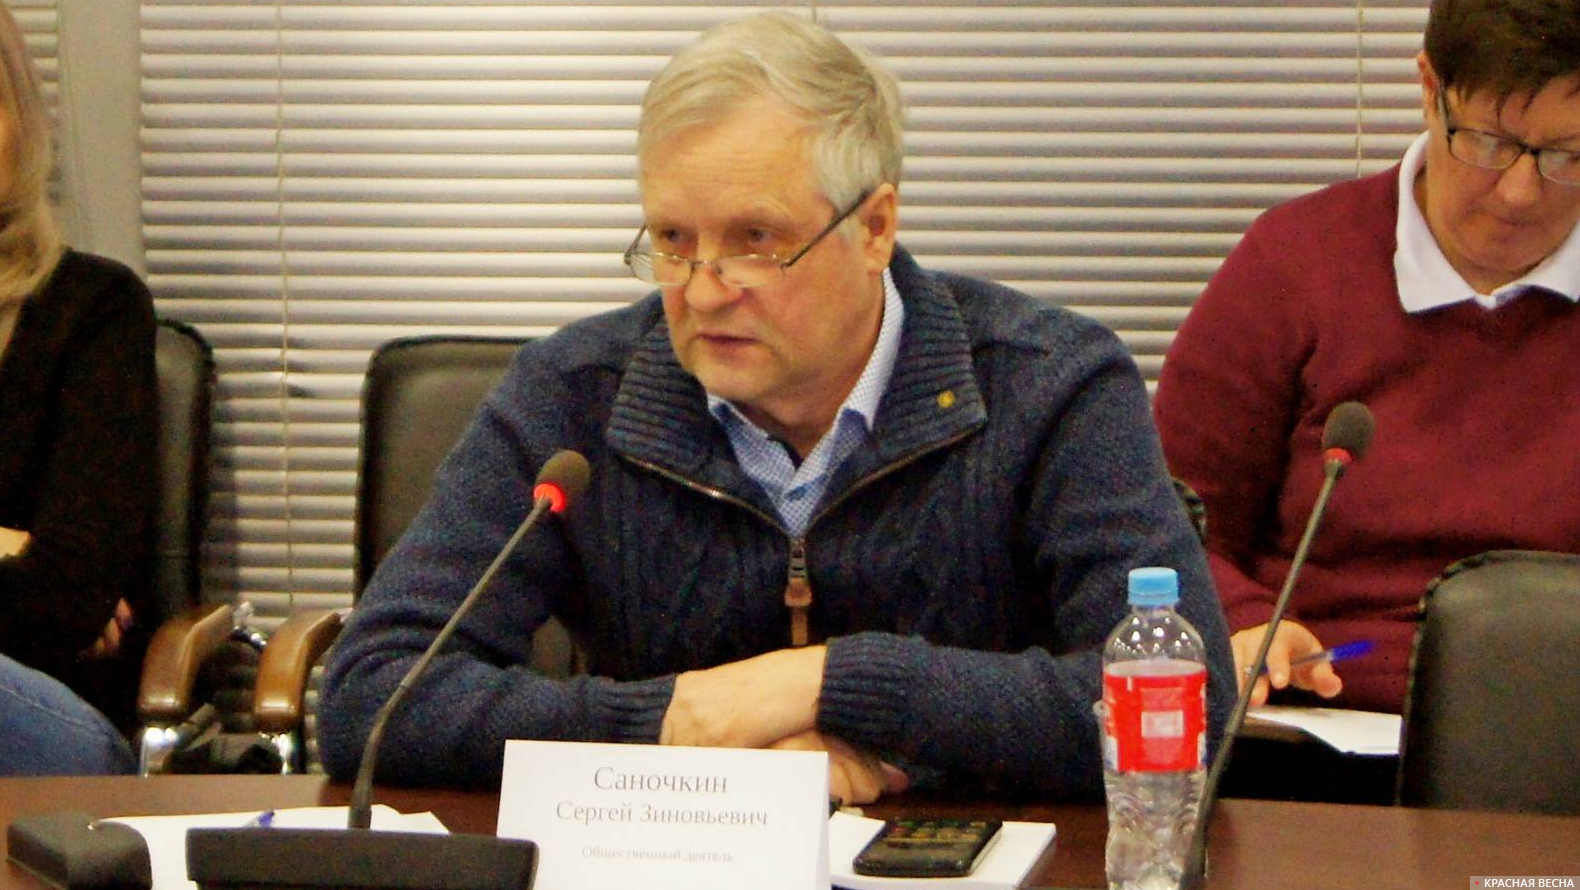 Сергей Зиновьевич Саночкин, общественный деятель, экс-депутат Новосибирского городского совета